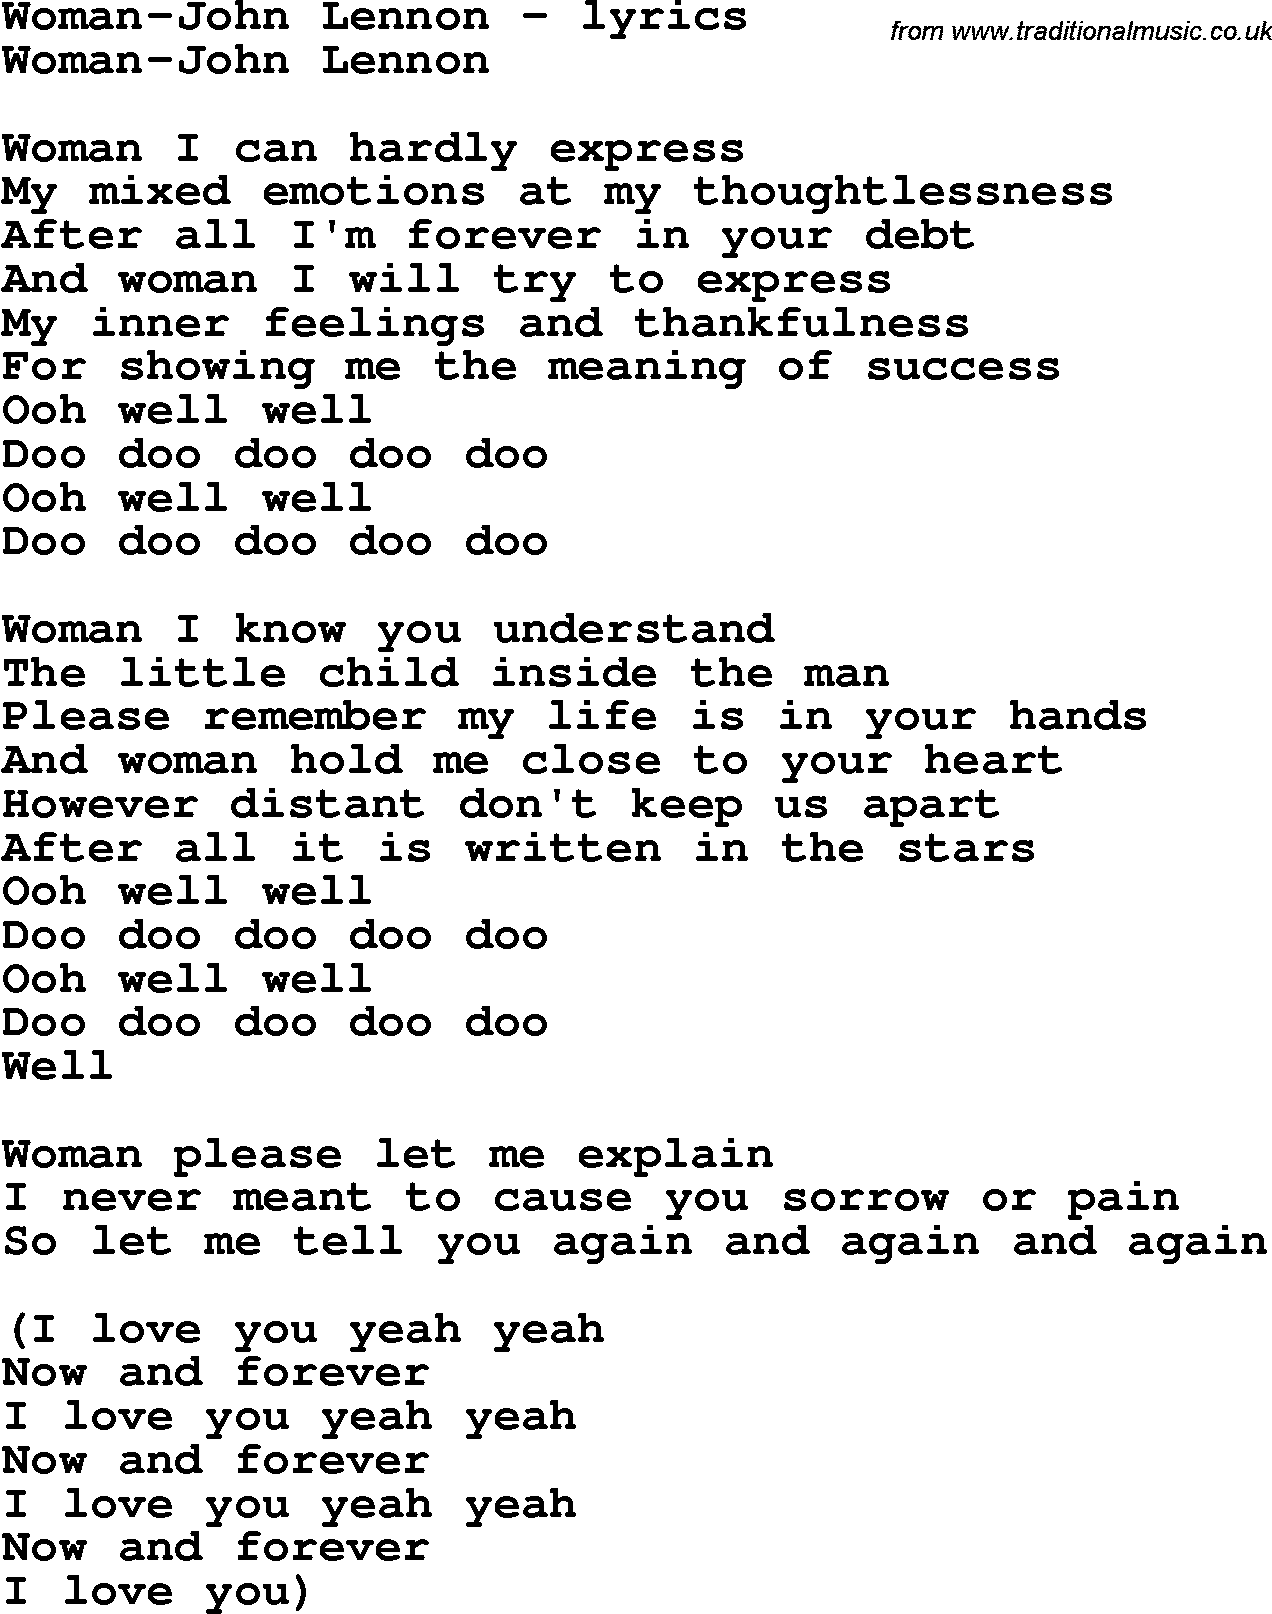 Love Song Lyrics for: Woman-John Lennon